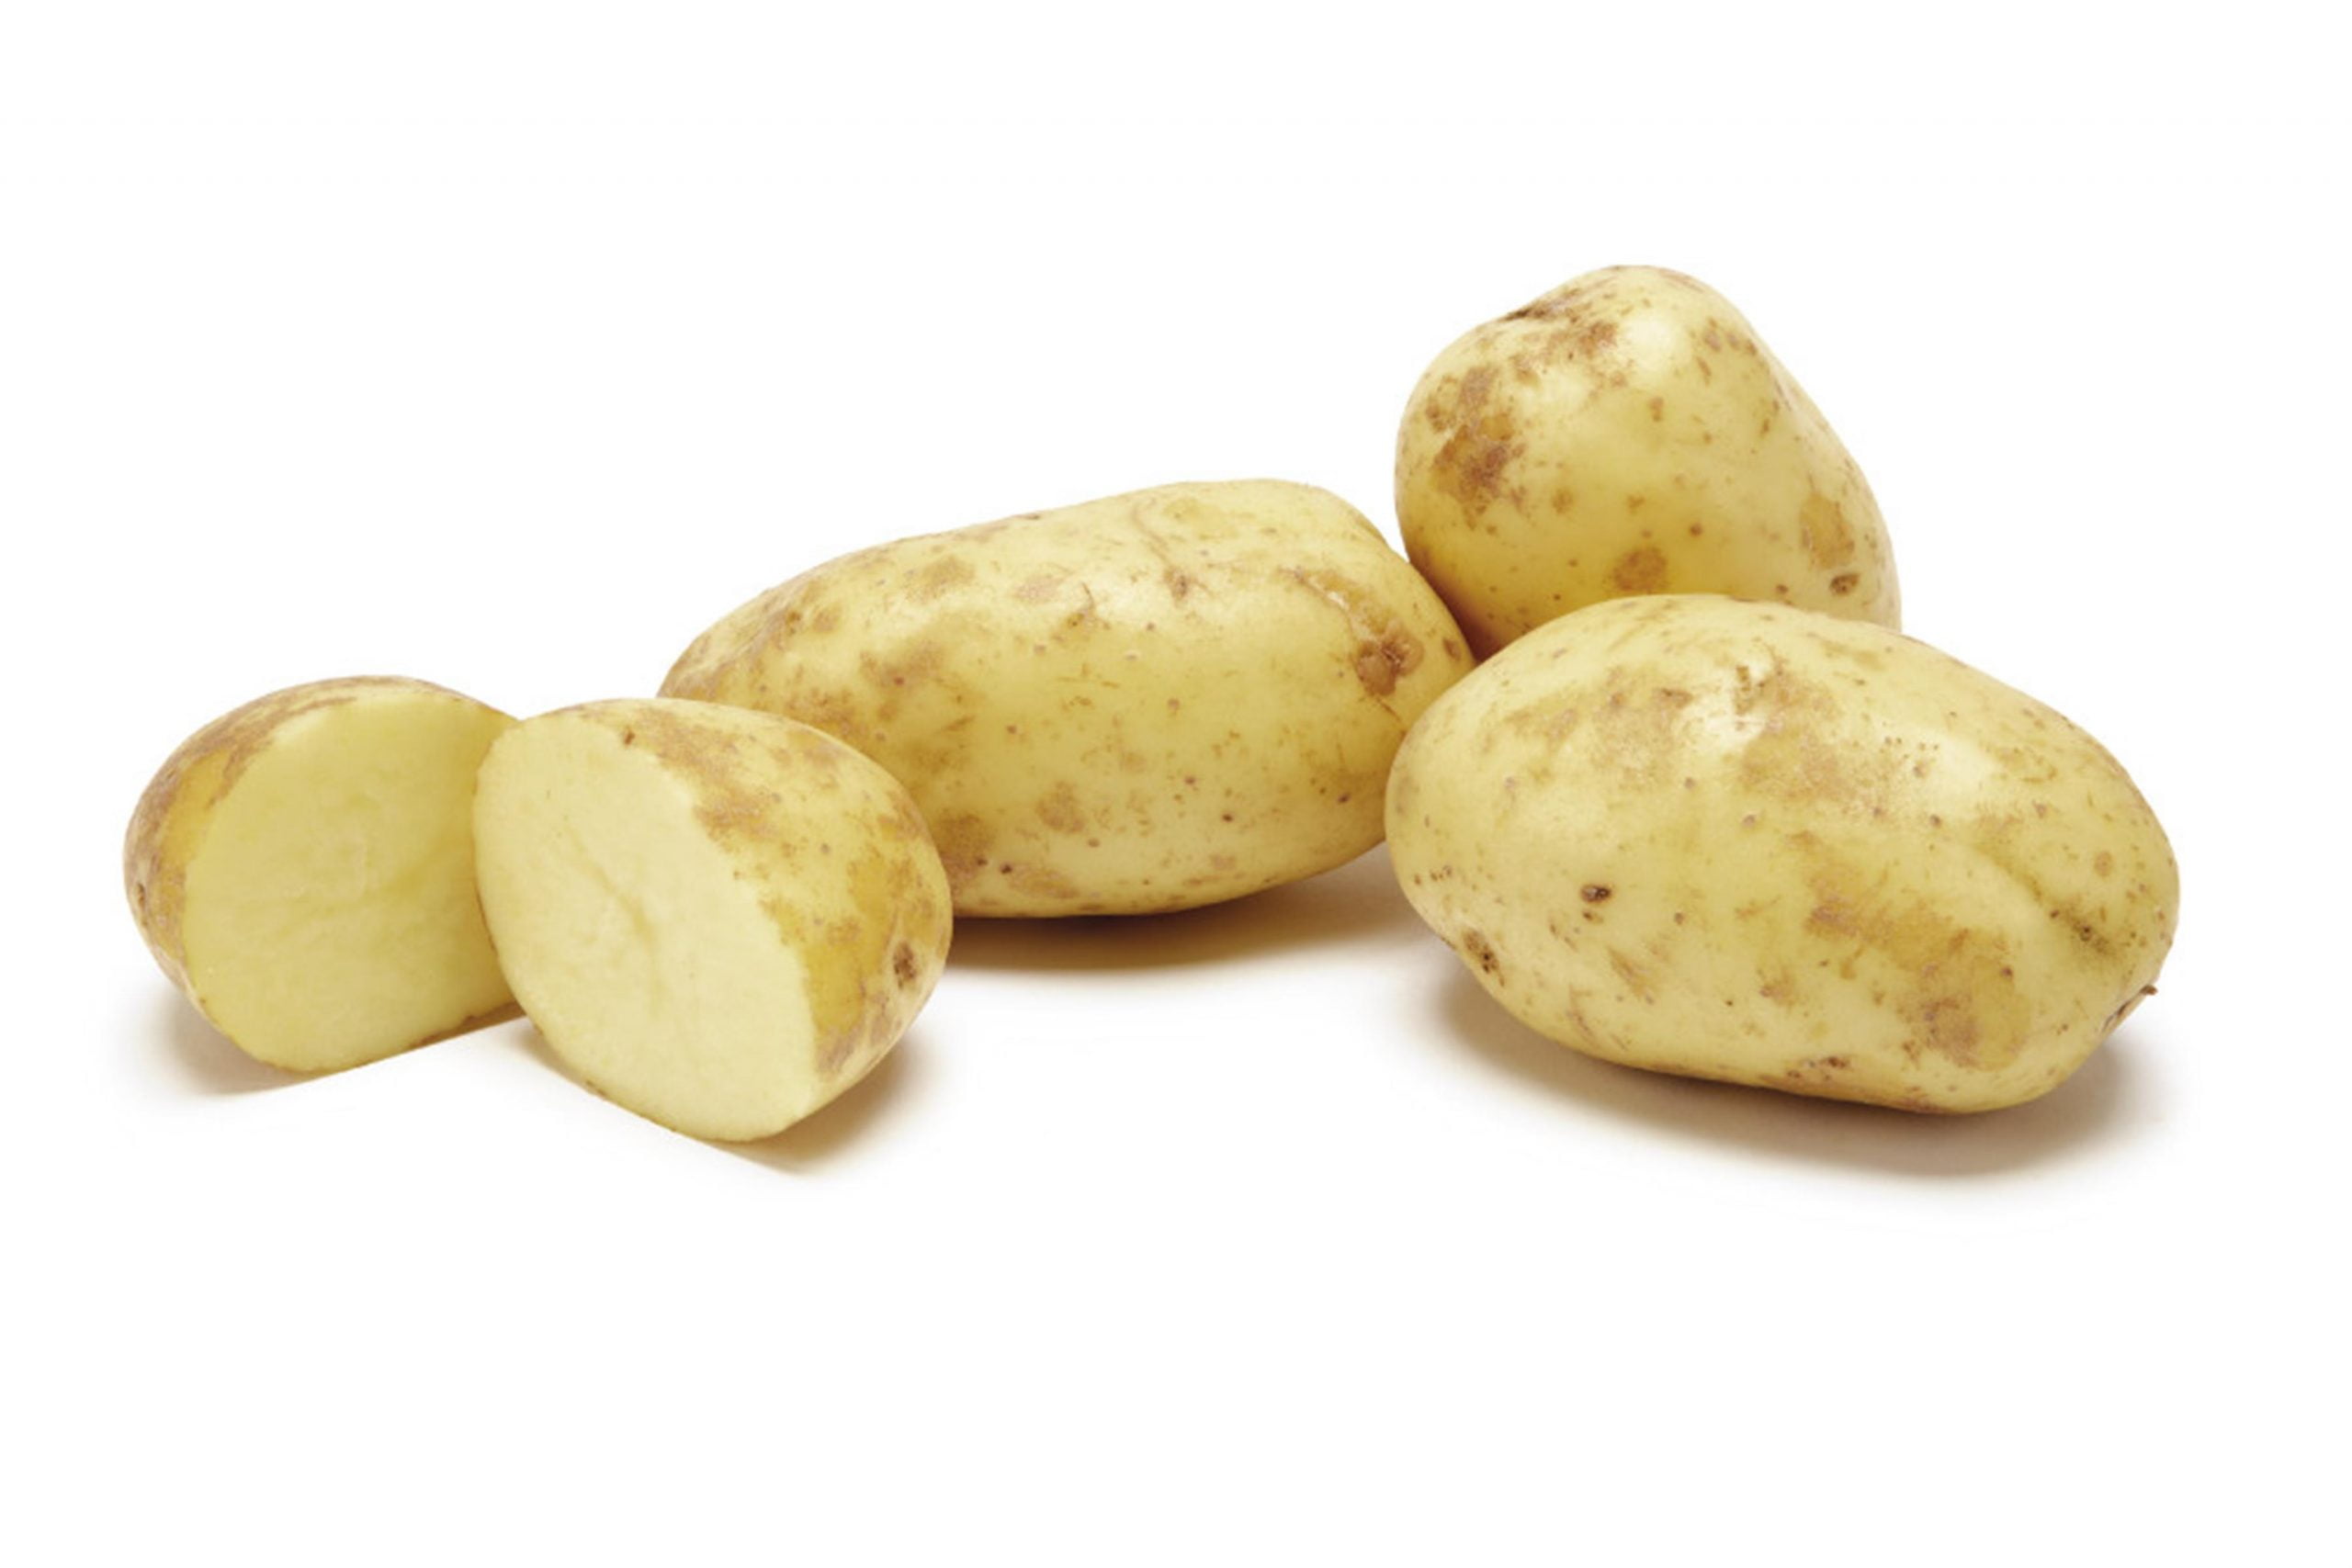 خواص و مضرات سیب زمینی، دانشنامه سیب زمینی، سیب زمینی سفید (white potato)